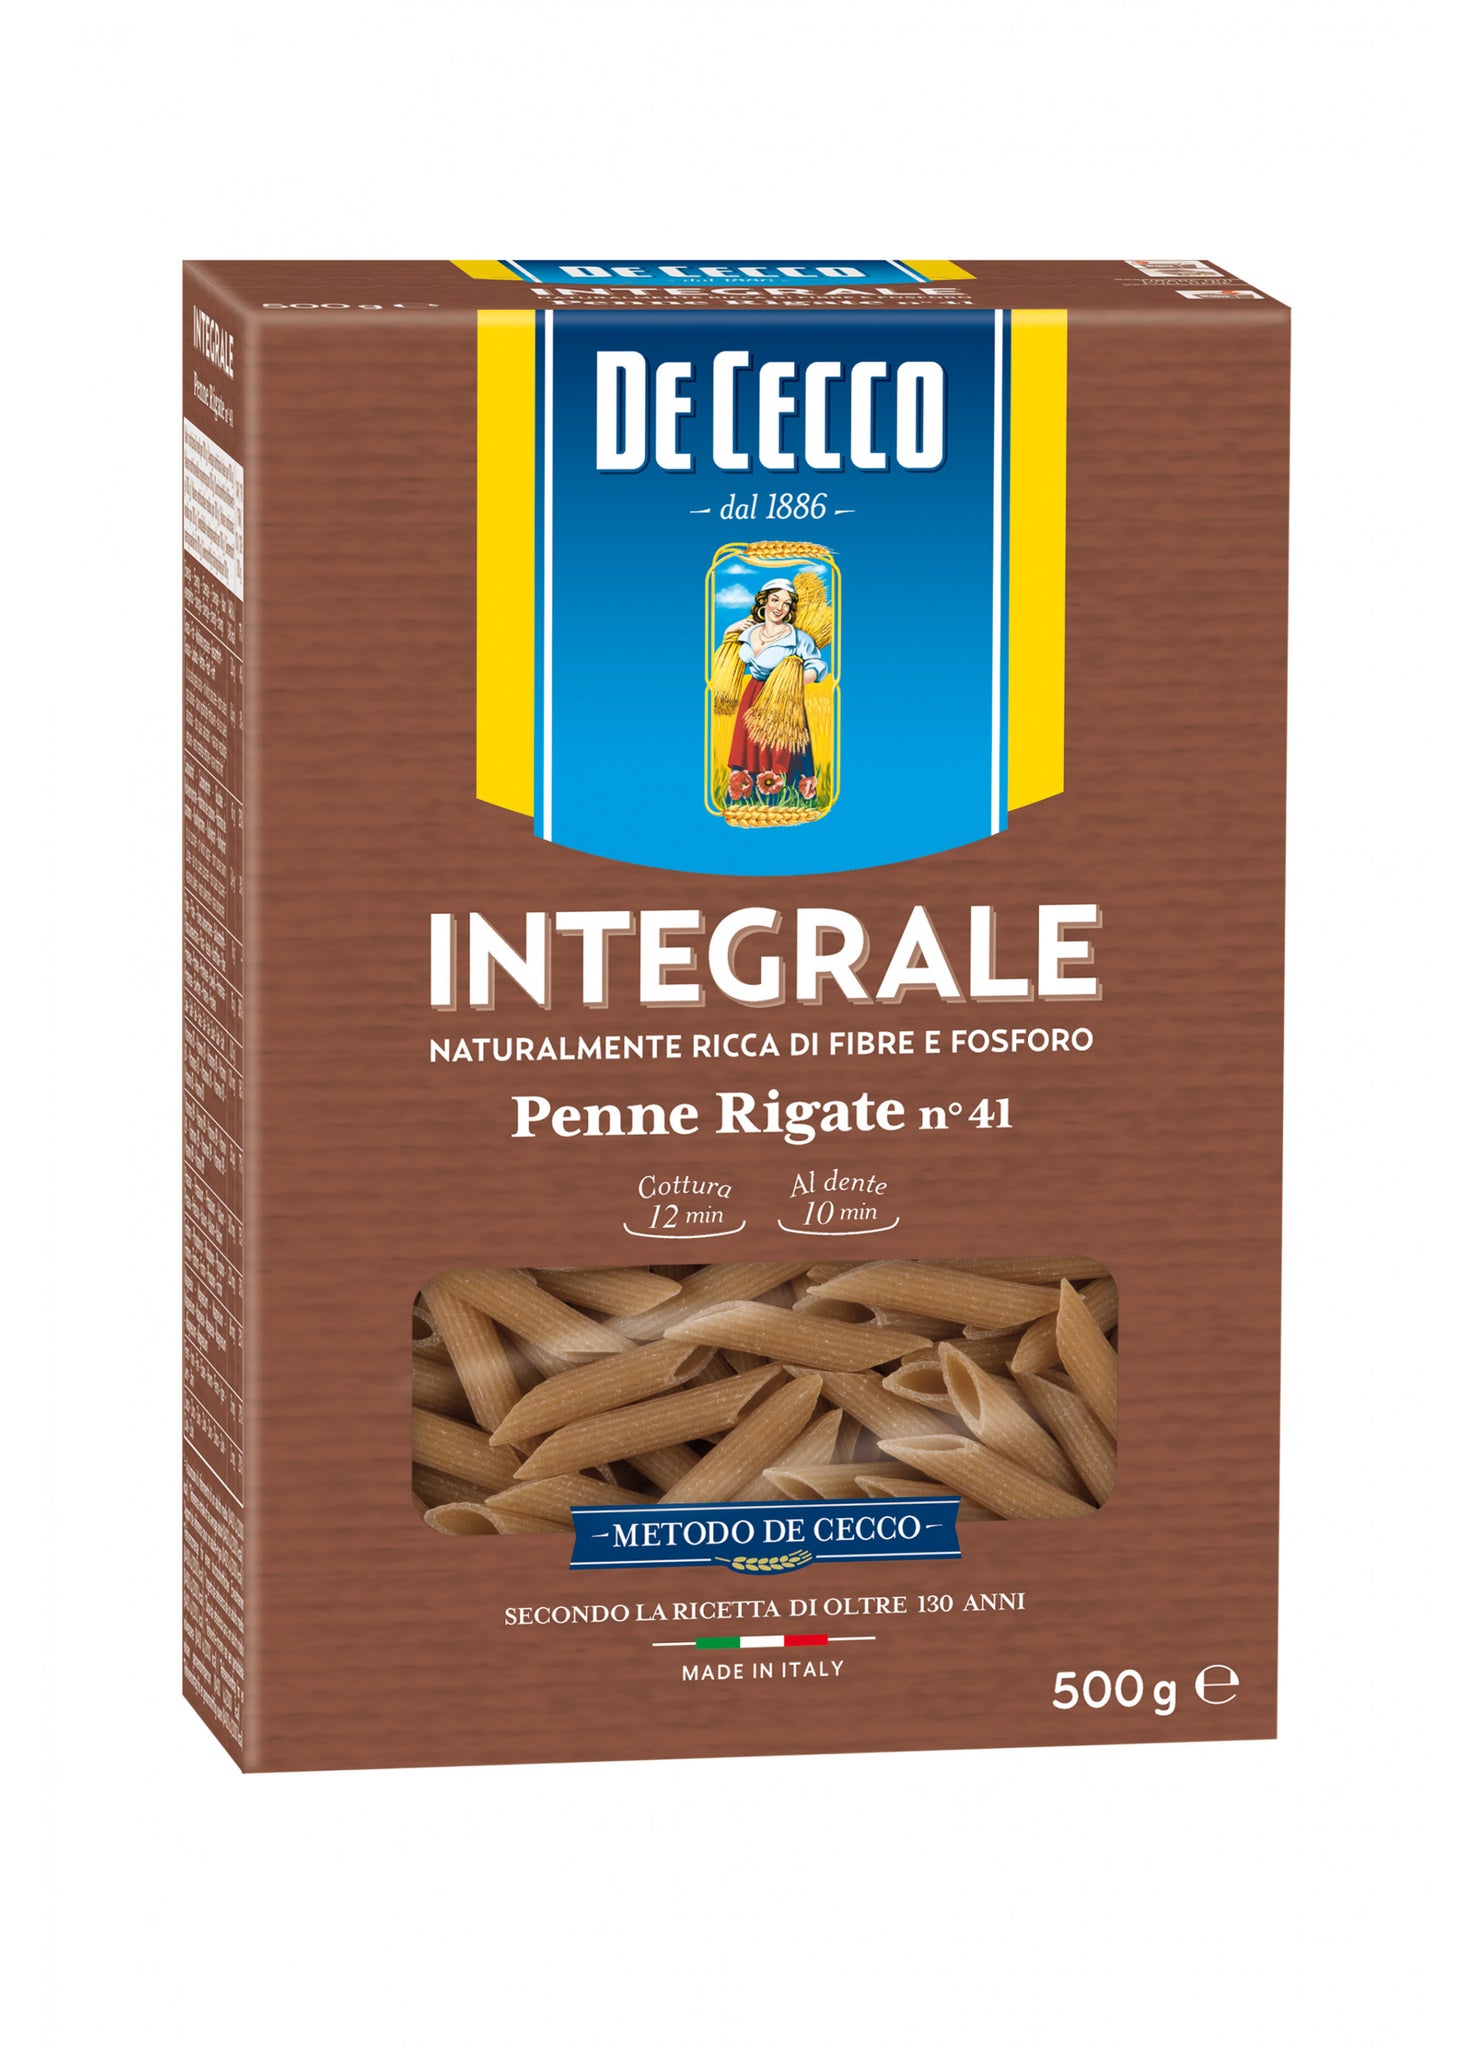 De Cecco Integrale (Whole Wheat) Penne Rigate no 41 500g